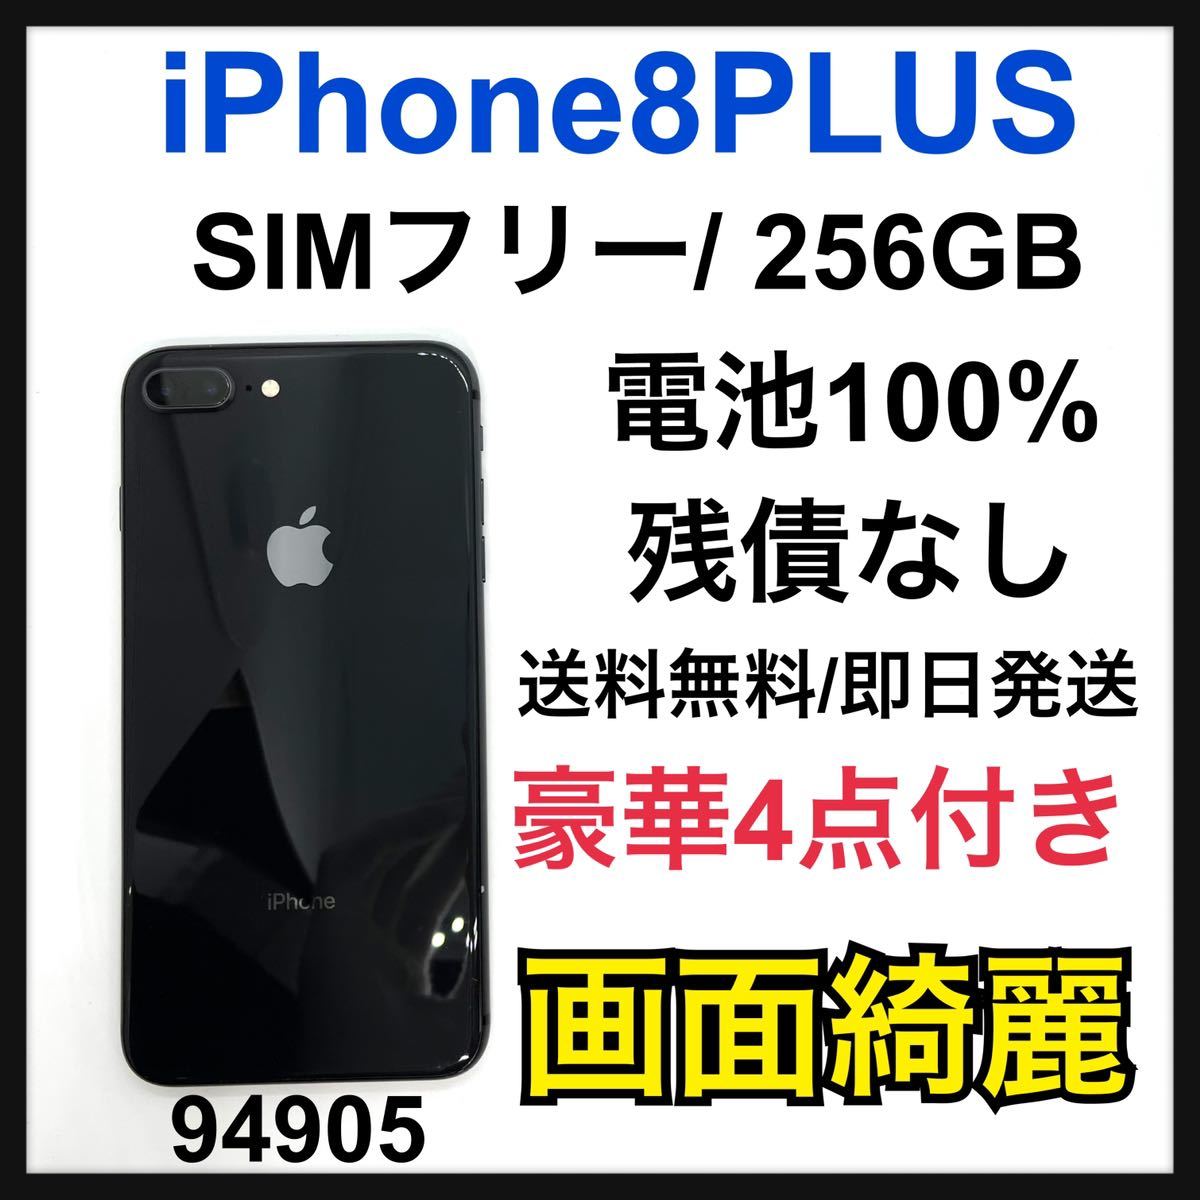 驚きの値段 iPhone 8 SIMフリー GB 256 Gray Space Plus iPhone - www.metkovic.hr